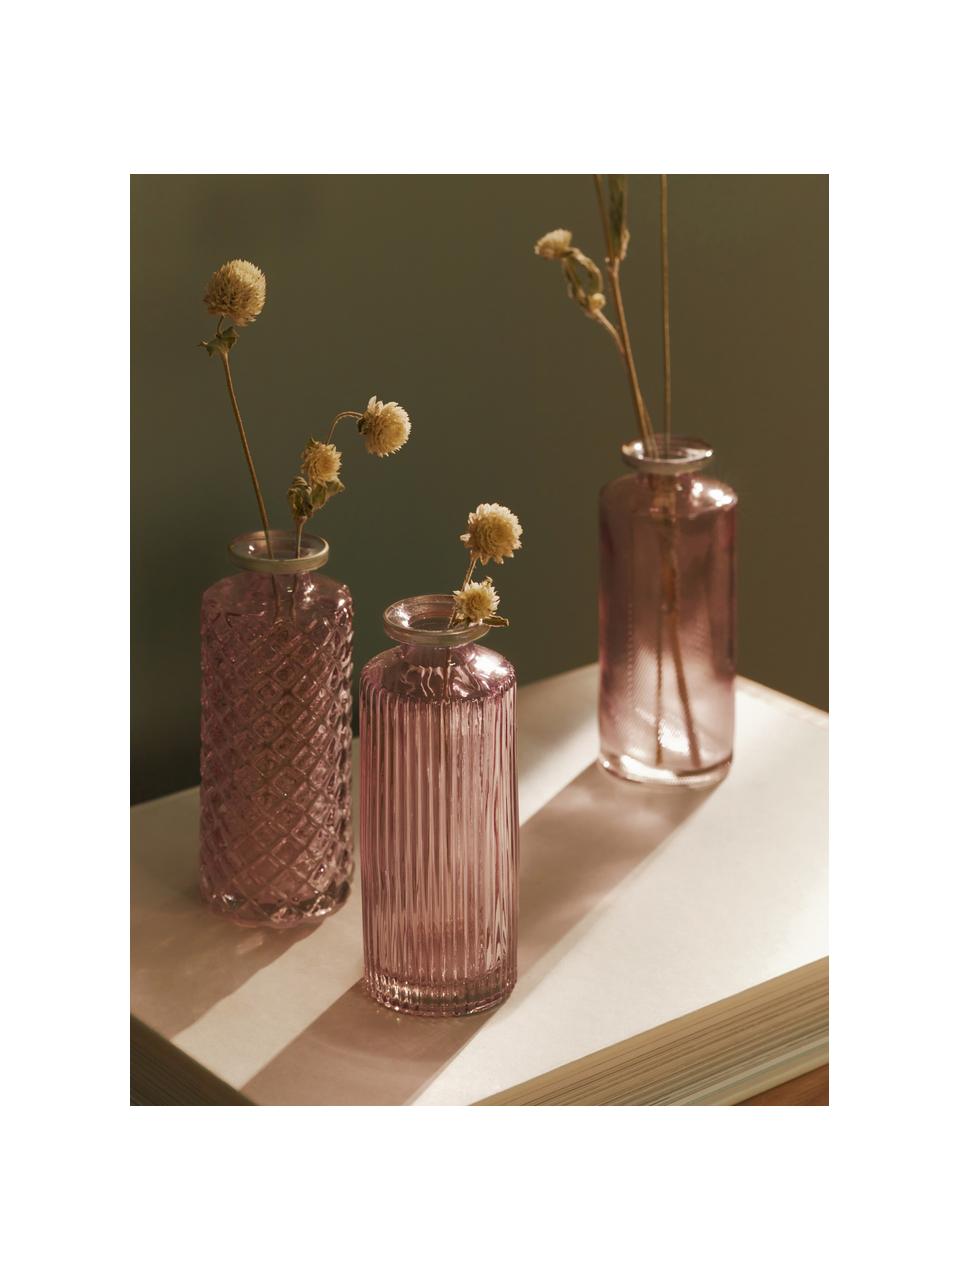 Sada malých skleněných váz Adore, 3 díly, Barevné sklo, Světle růžová, transparentní, stříbrná, Ø 5 cm, V 13 cm